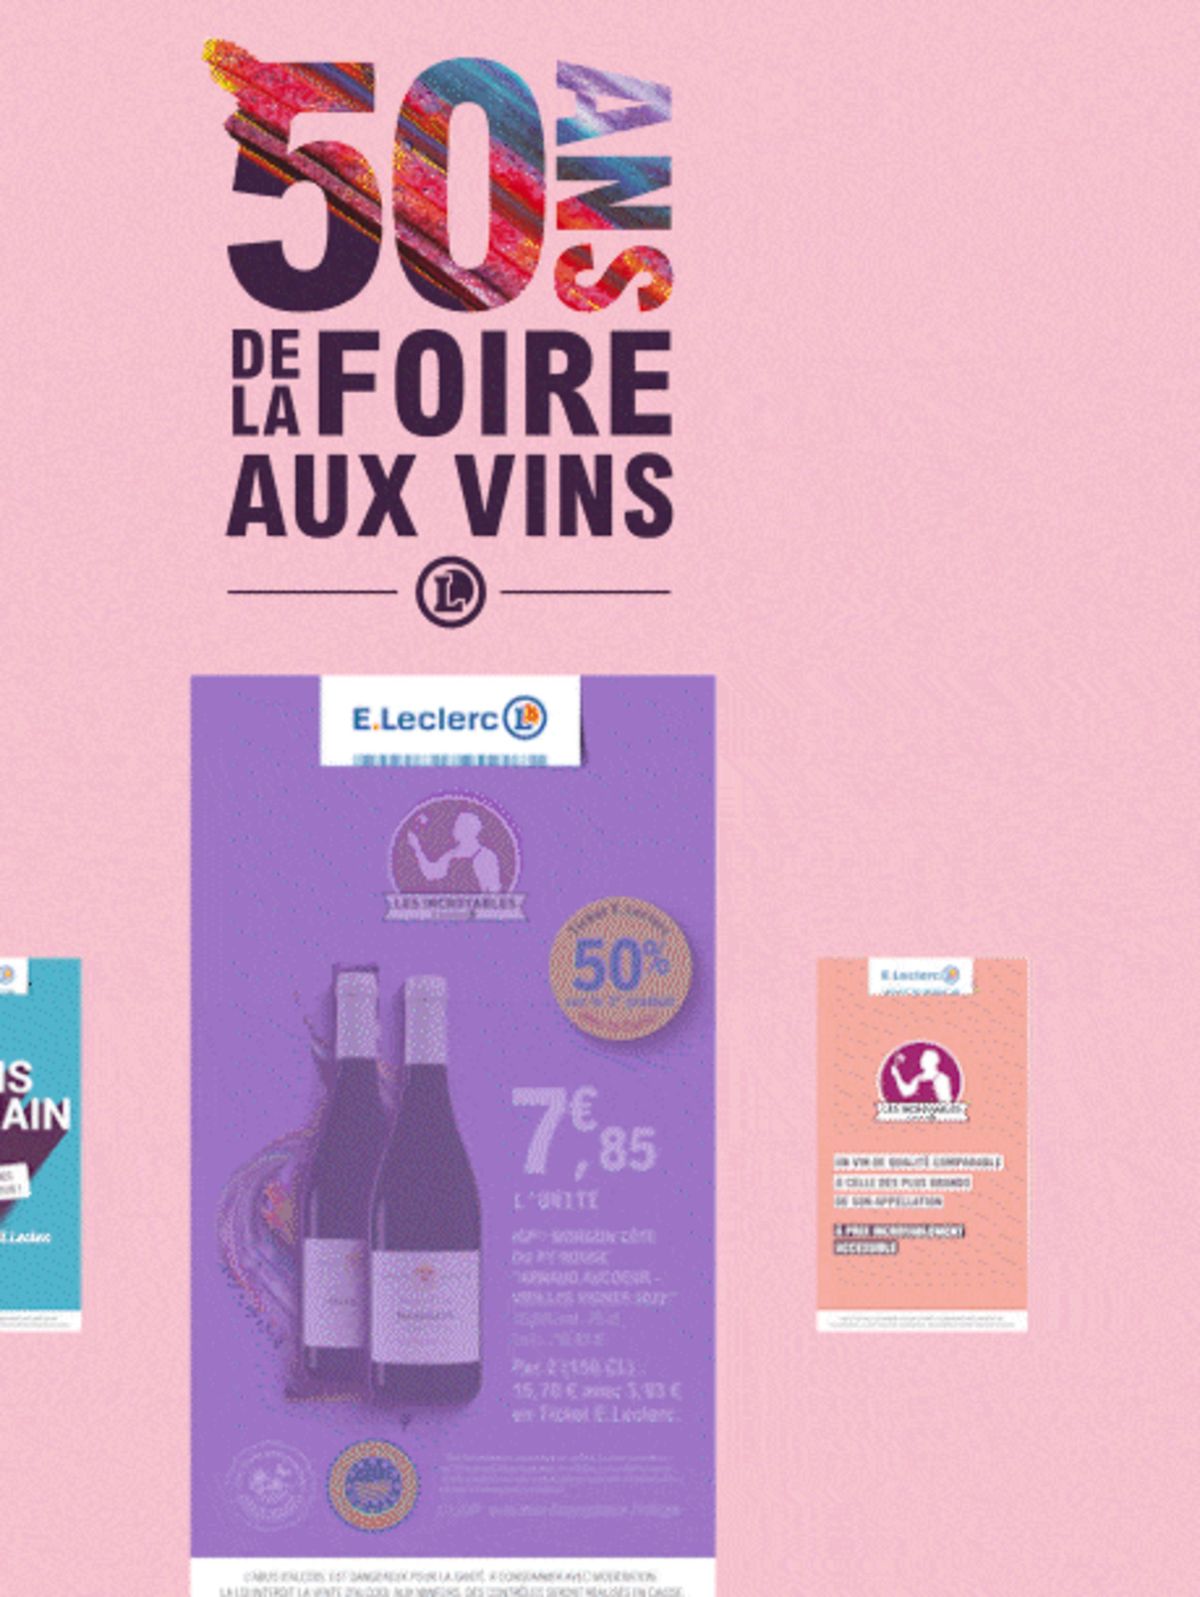 Catalogue Foire Aux Vins - Mixte, page 00364